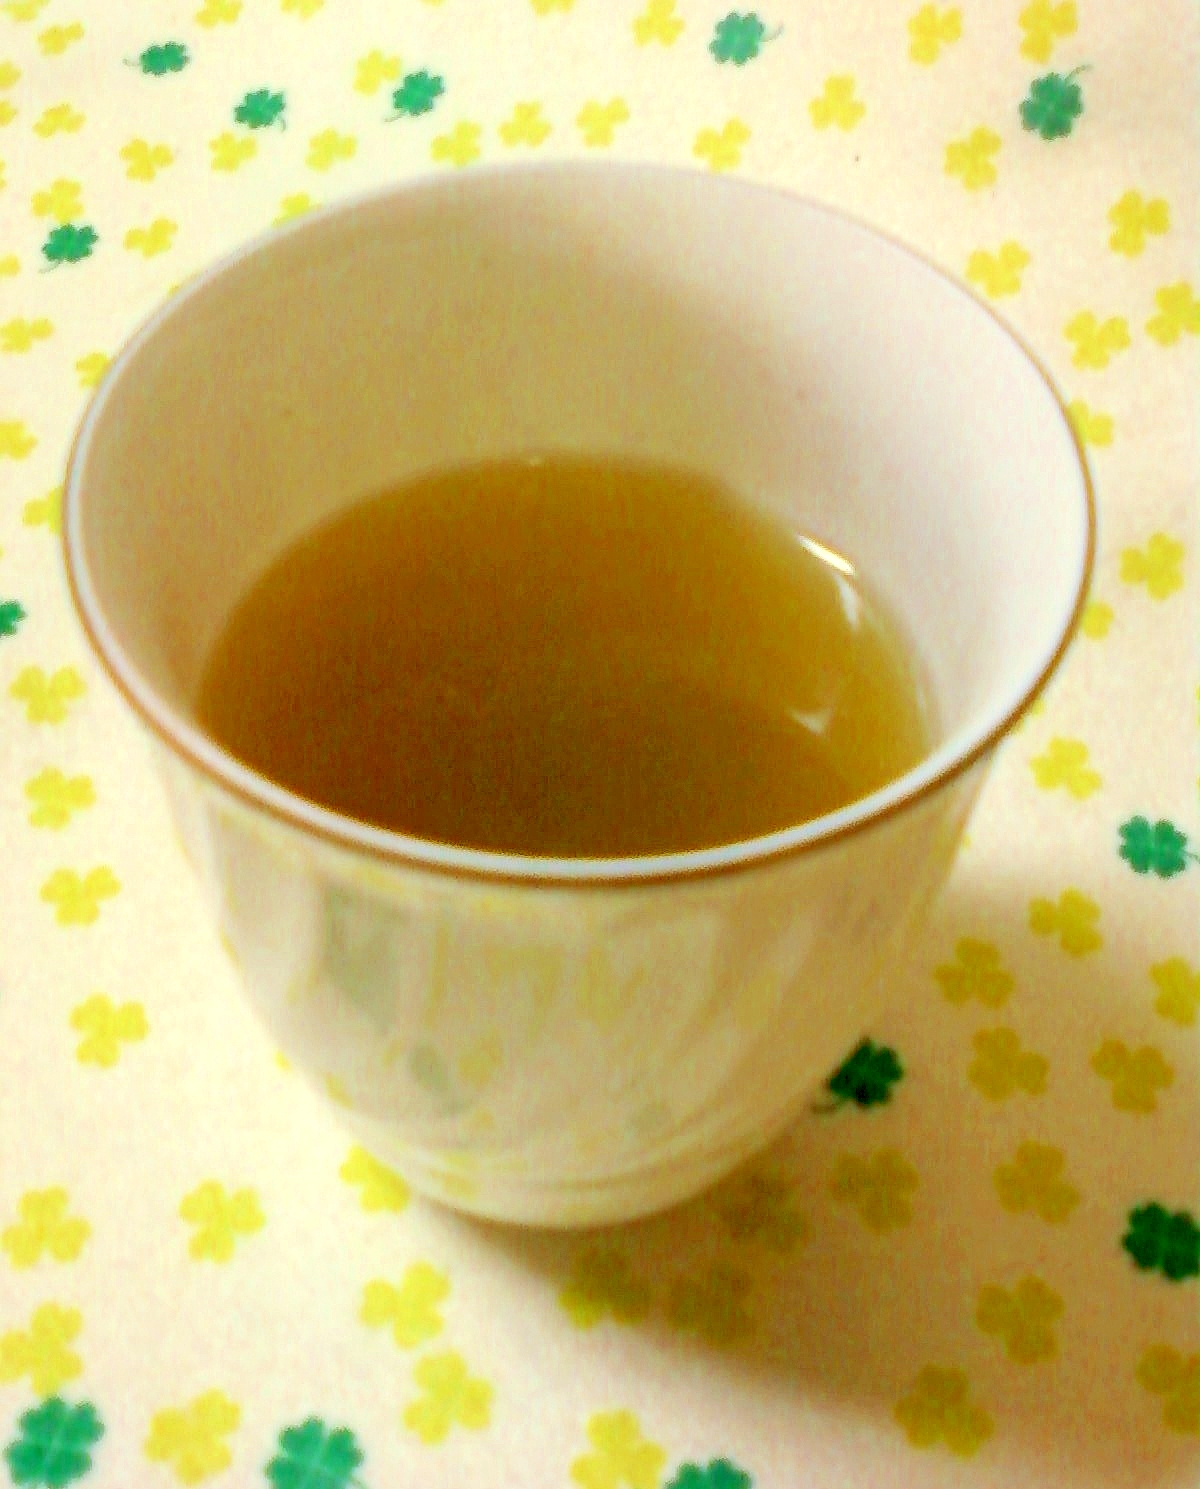 ☆・暖まりたい時には☆生姜蜂蜜レモン玄米茶☆*:・